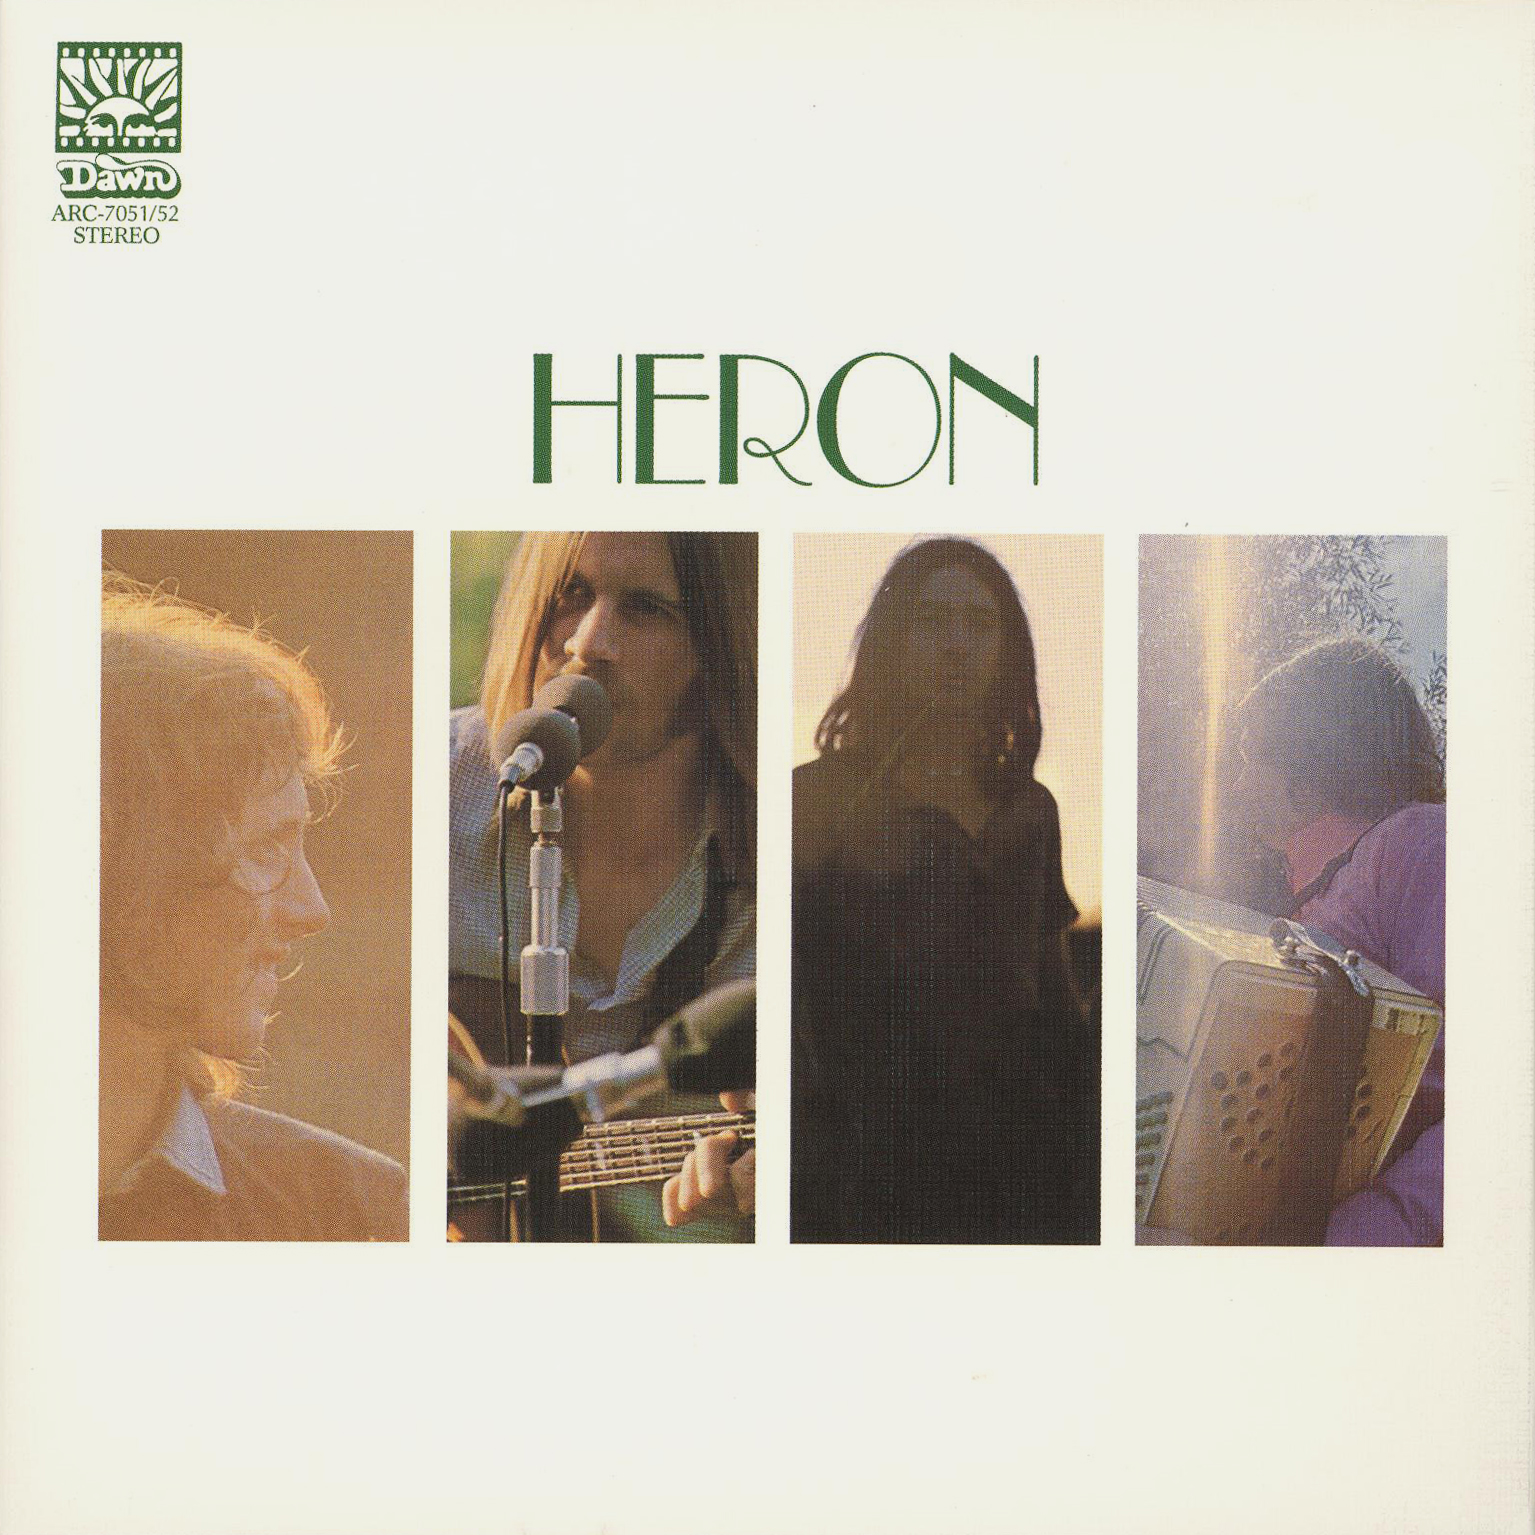 Vuestros discos y músicos favoritos de folk - Página 2 Heron-st-1970-front-large